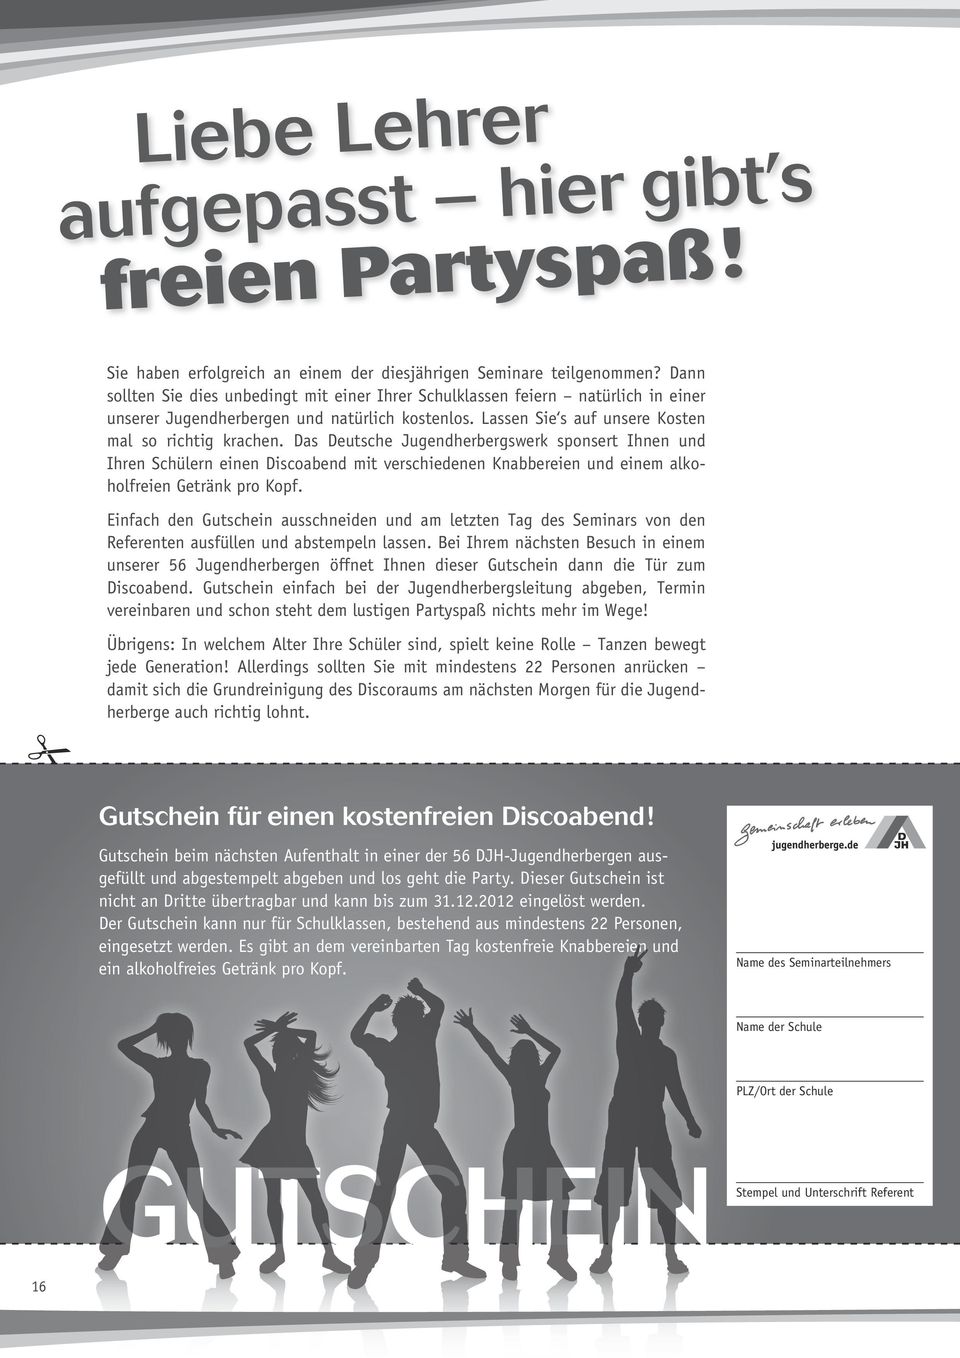 Das Deutsche Jugendherbergswerk sponsert Ihnen und Ihren Schülern einen Discoabend mit verschiedenen Knabbereien und einem alkoholfreien Getränk pro Kopf.